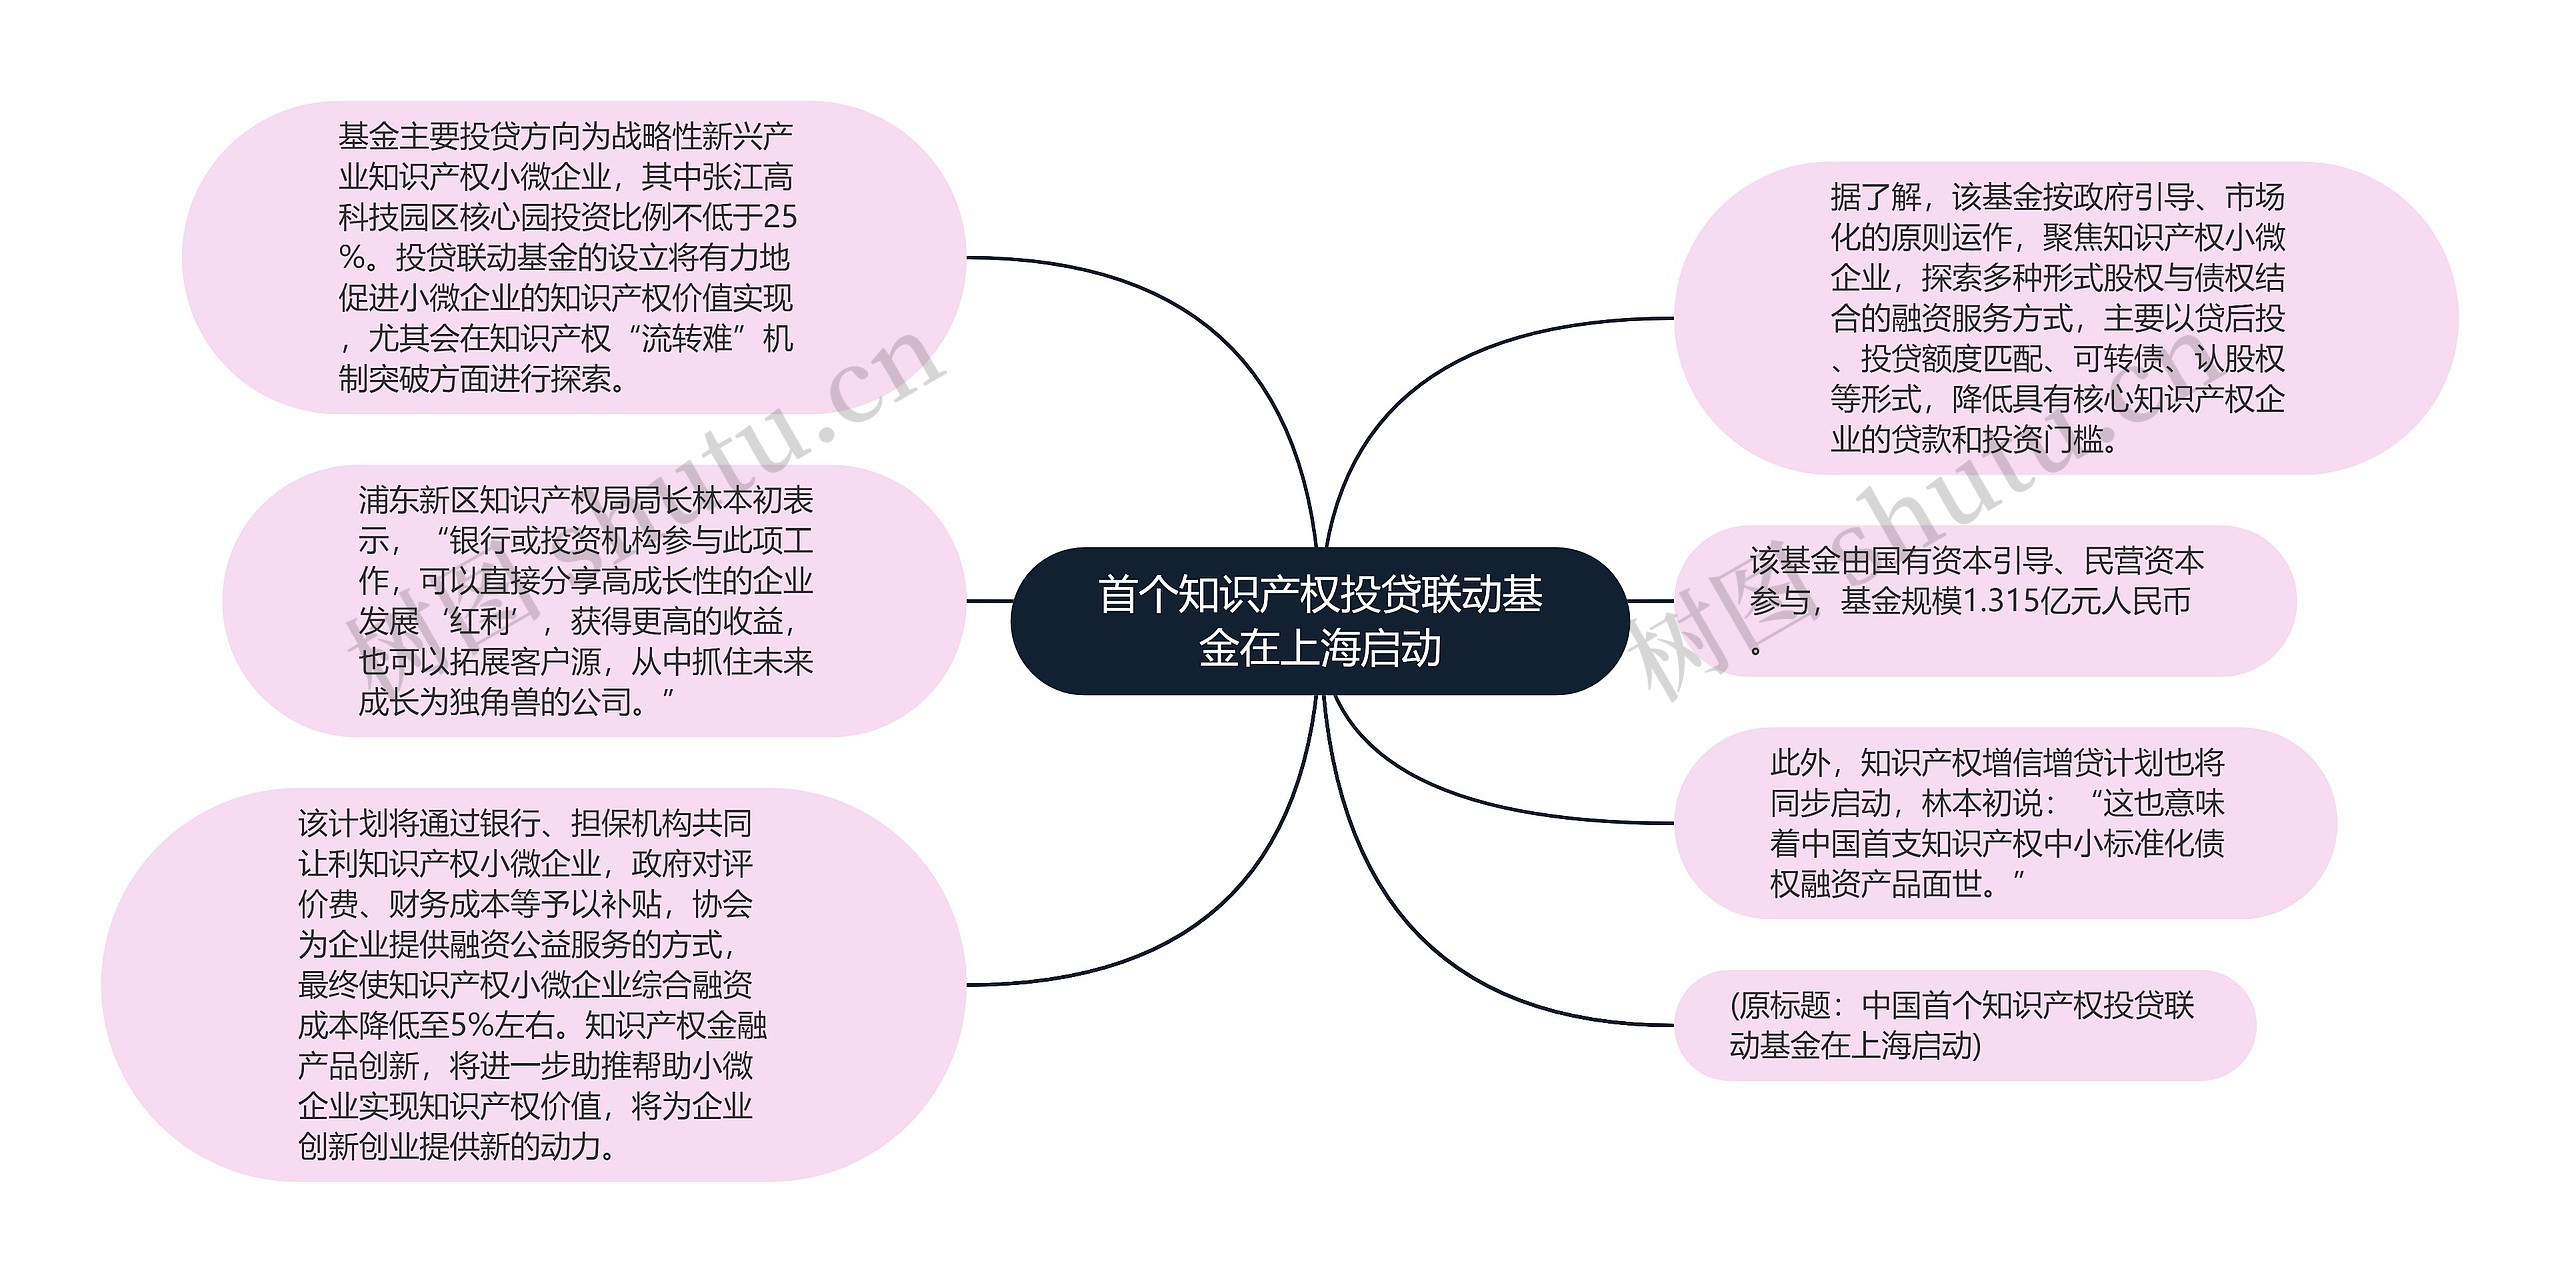 首个知识产权投贷联动基金在上海启动